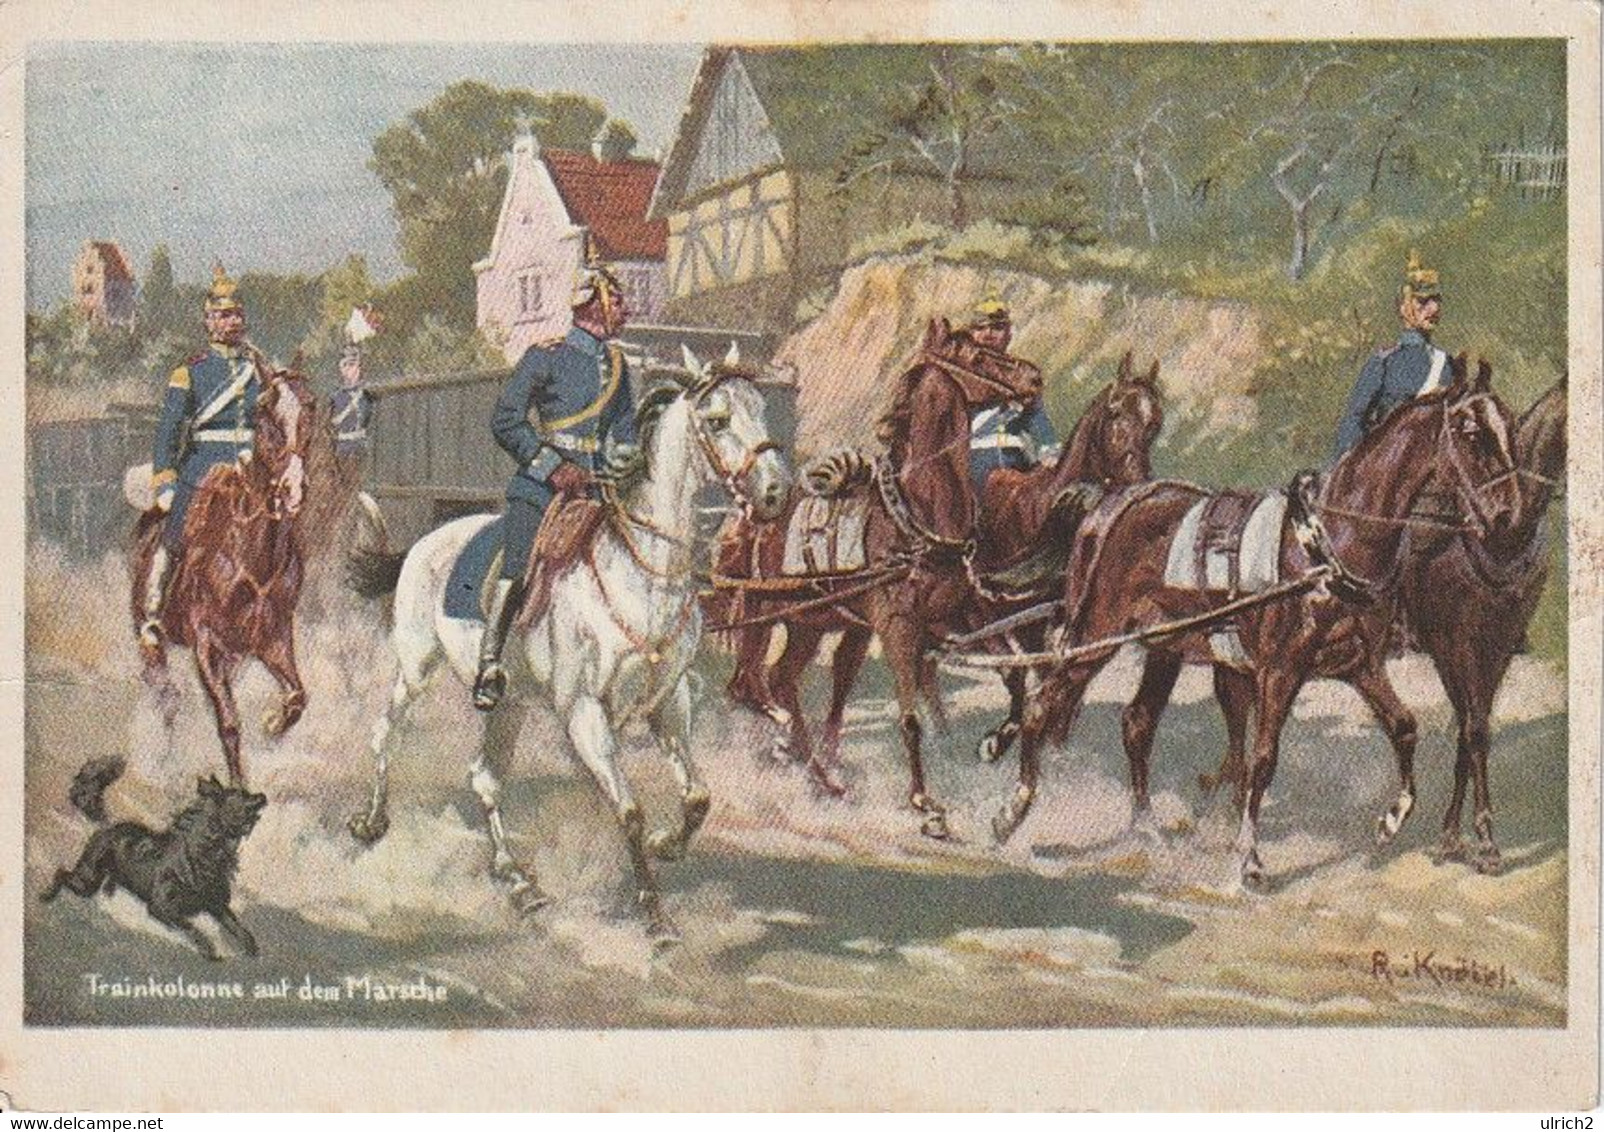 AK Trainkolonne Auf Dem Marsche - Dt. Reich - Künstlerkarte R. Knötel - Preuß. Landeskriegerverband - Ca. 1910 (60519) - Uniformen